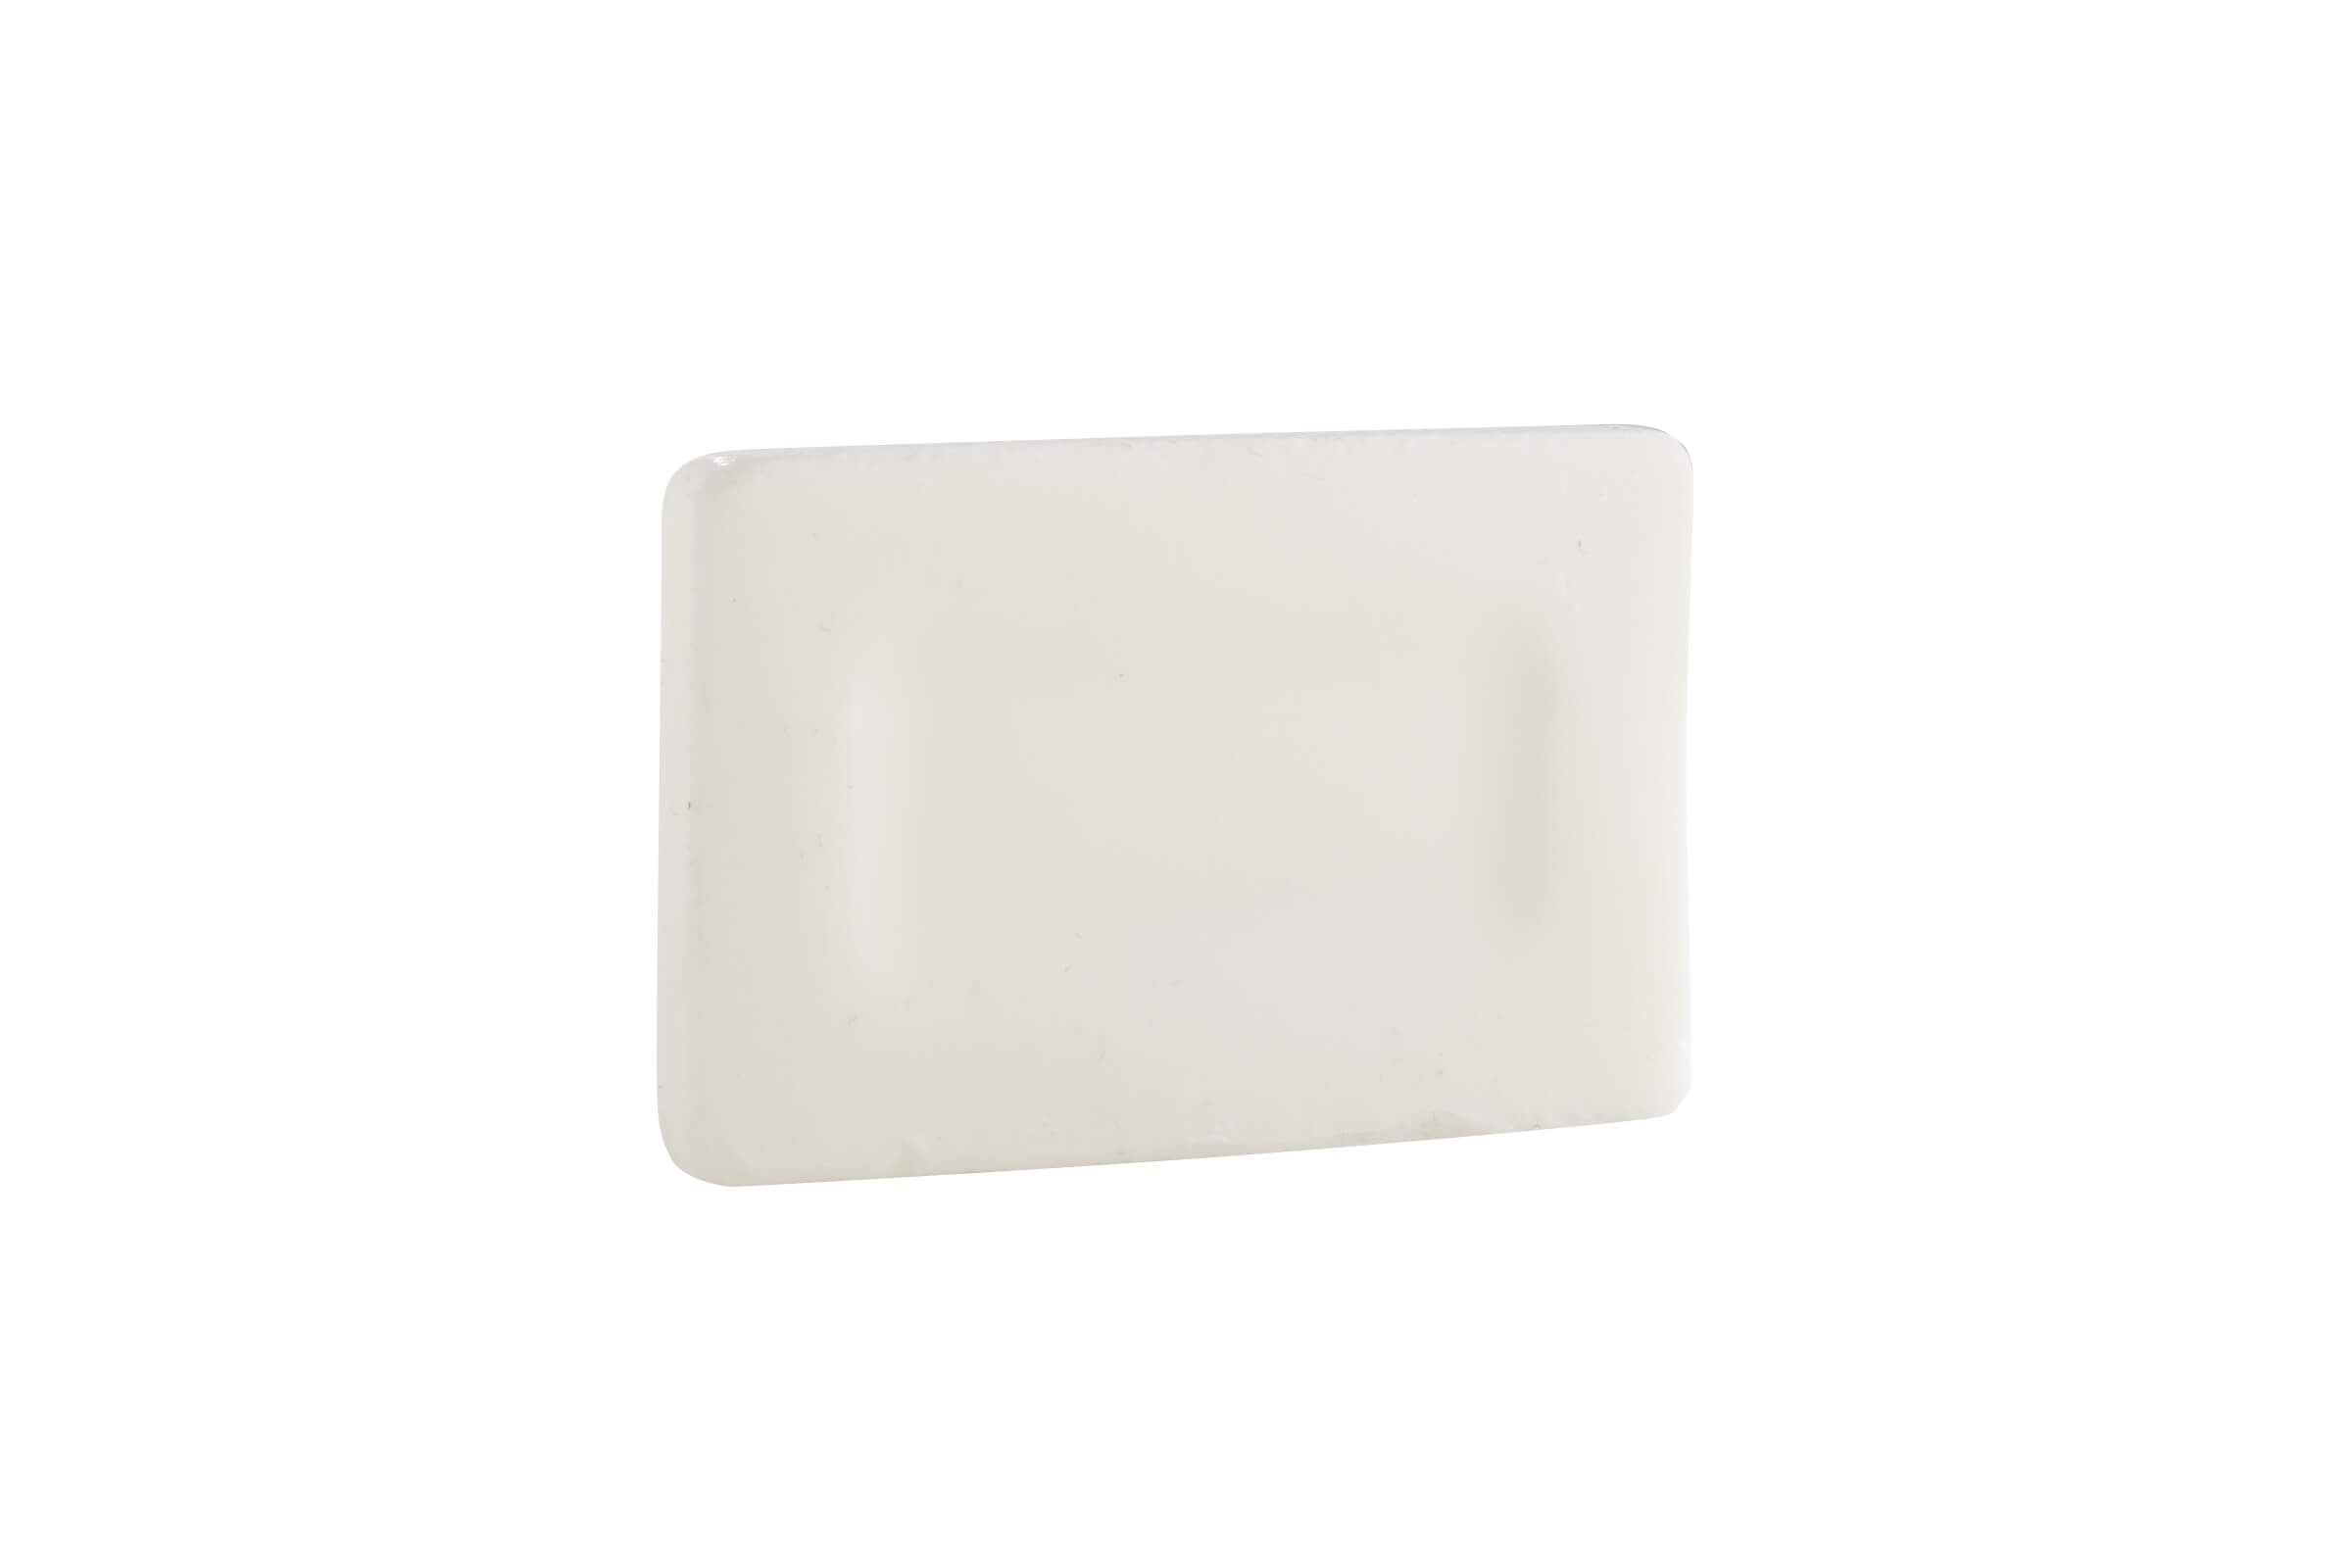 Unwrapped Antibacterial Bar Soap